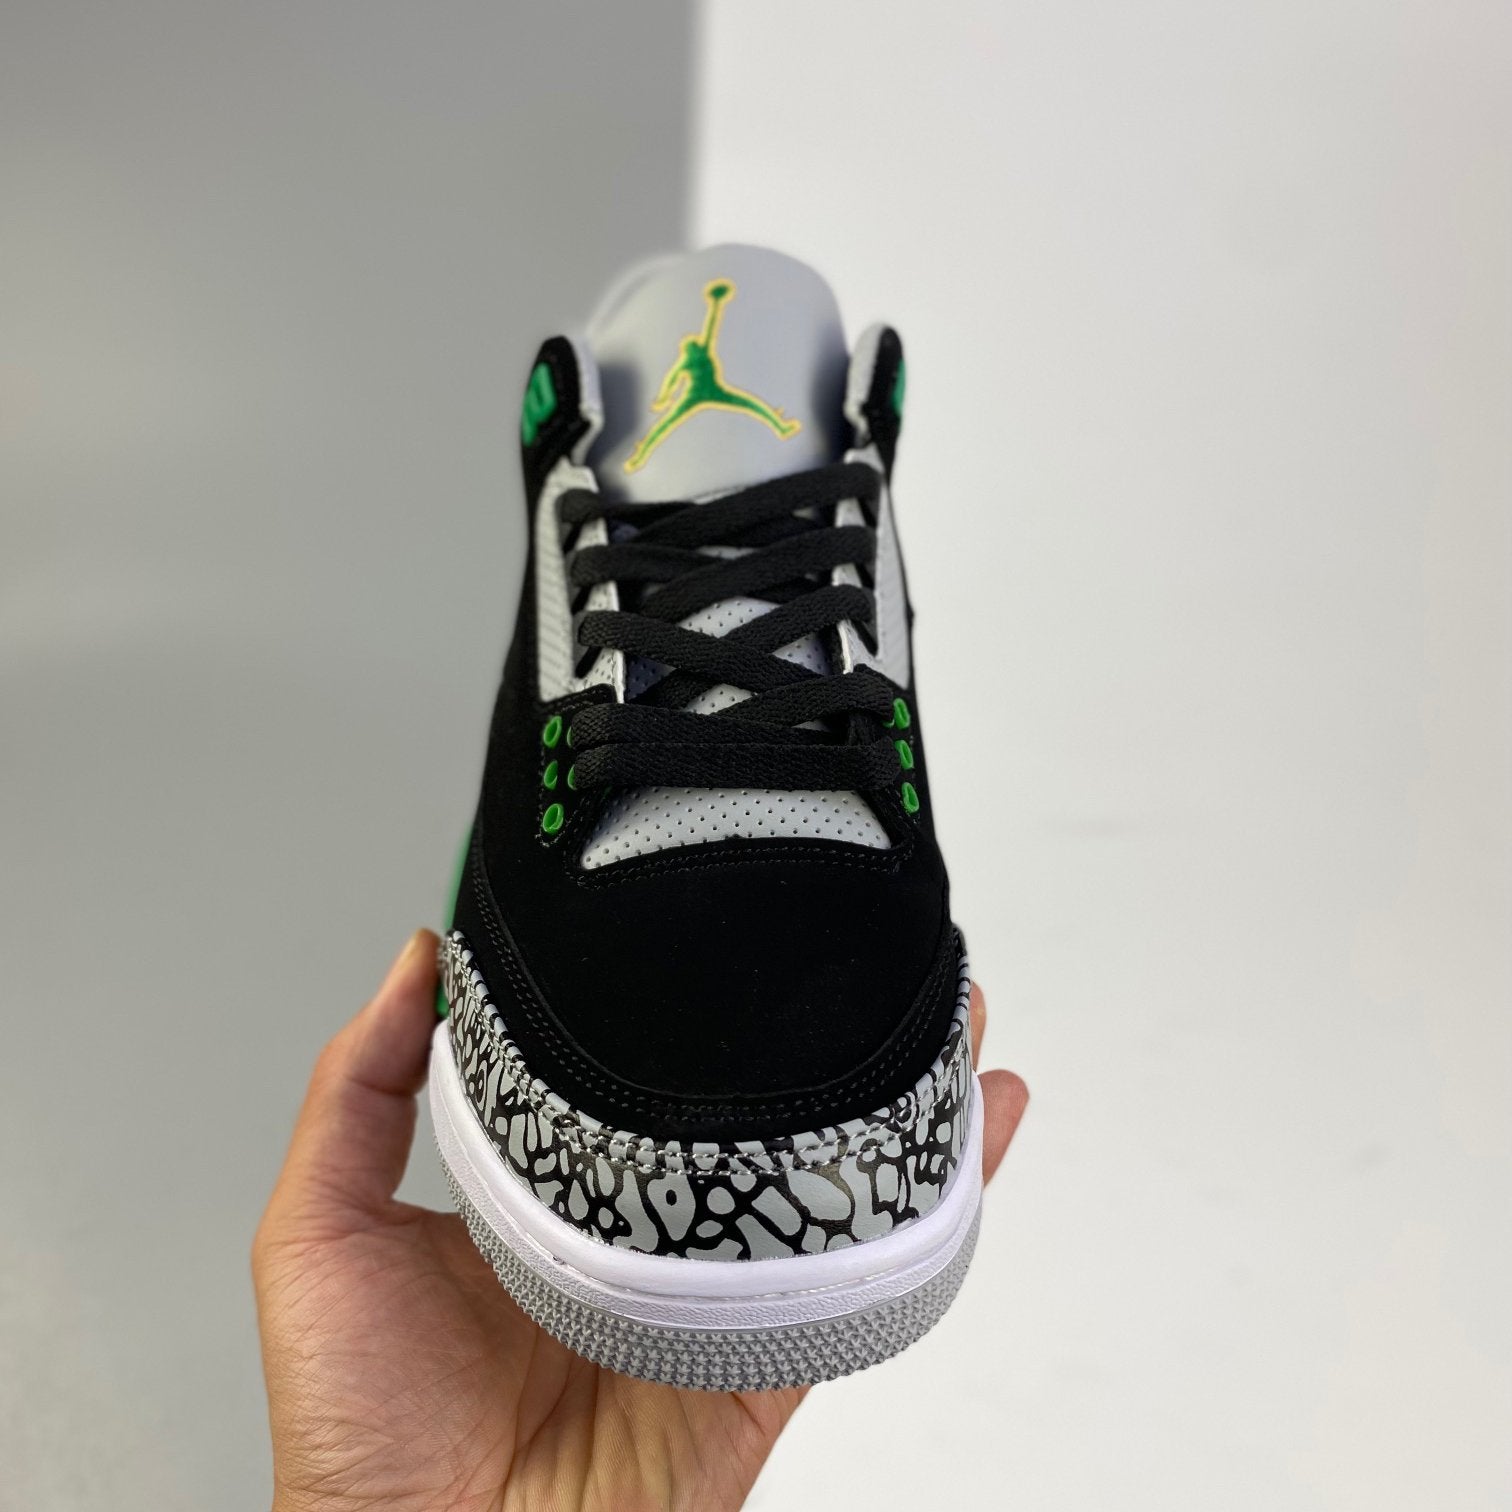 Nike Air Jordan 3 Pine Green Sneakers Shoes from biubiuover